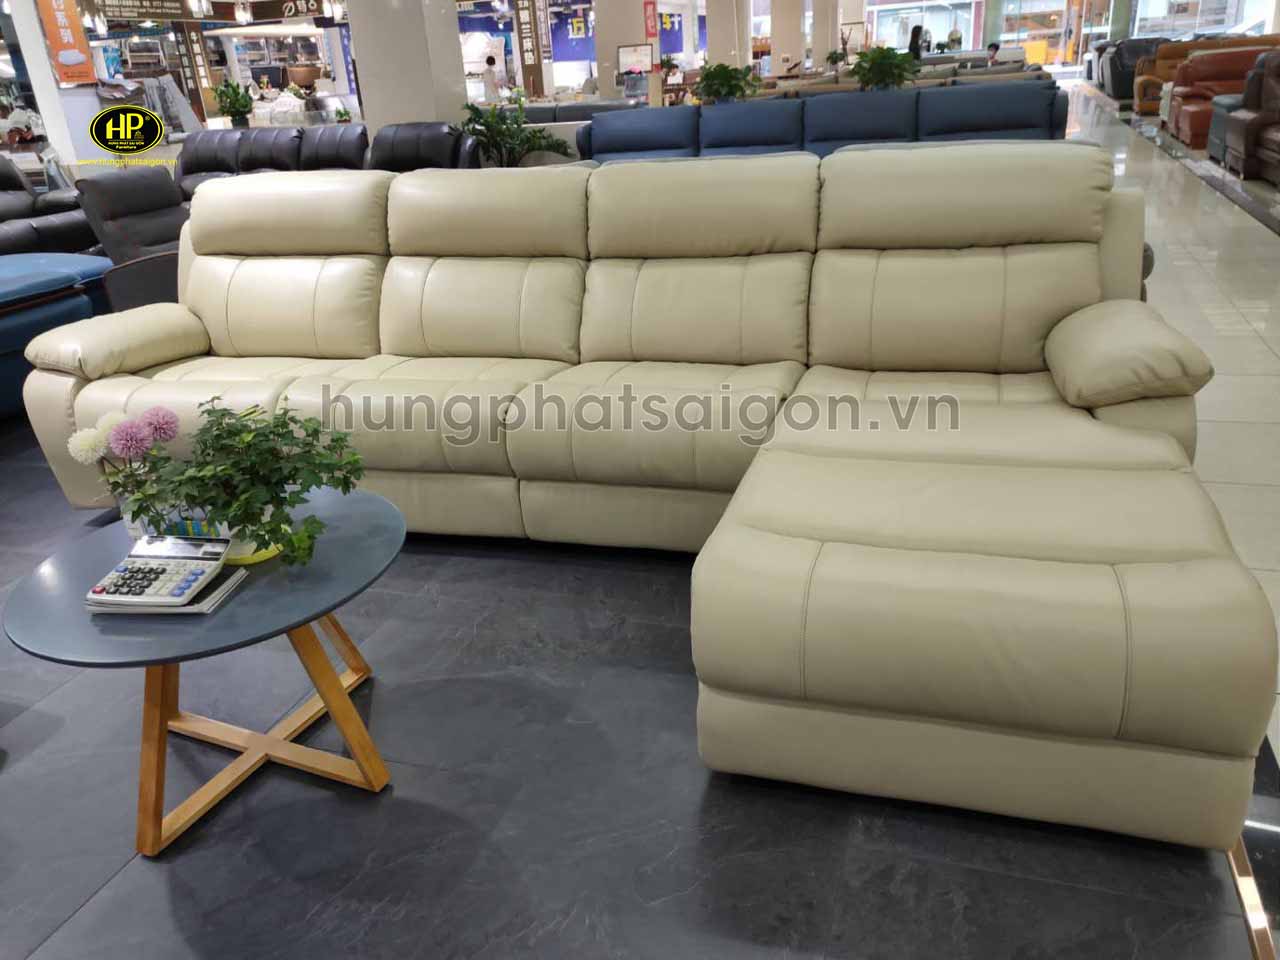 Kinh nghiệm mua ghế sofa Thái Bình giá rẻ và chất lượng